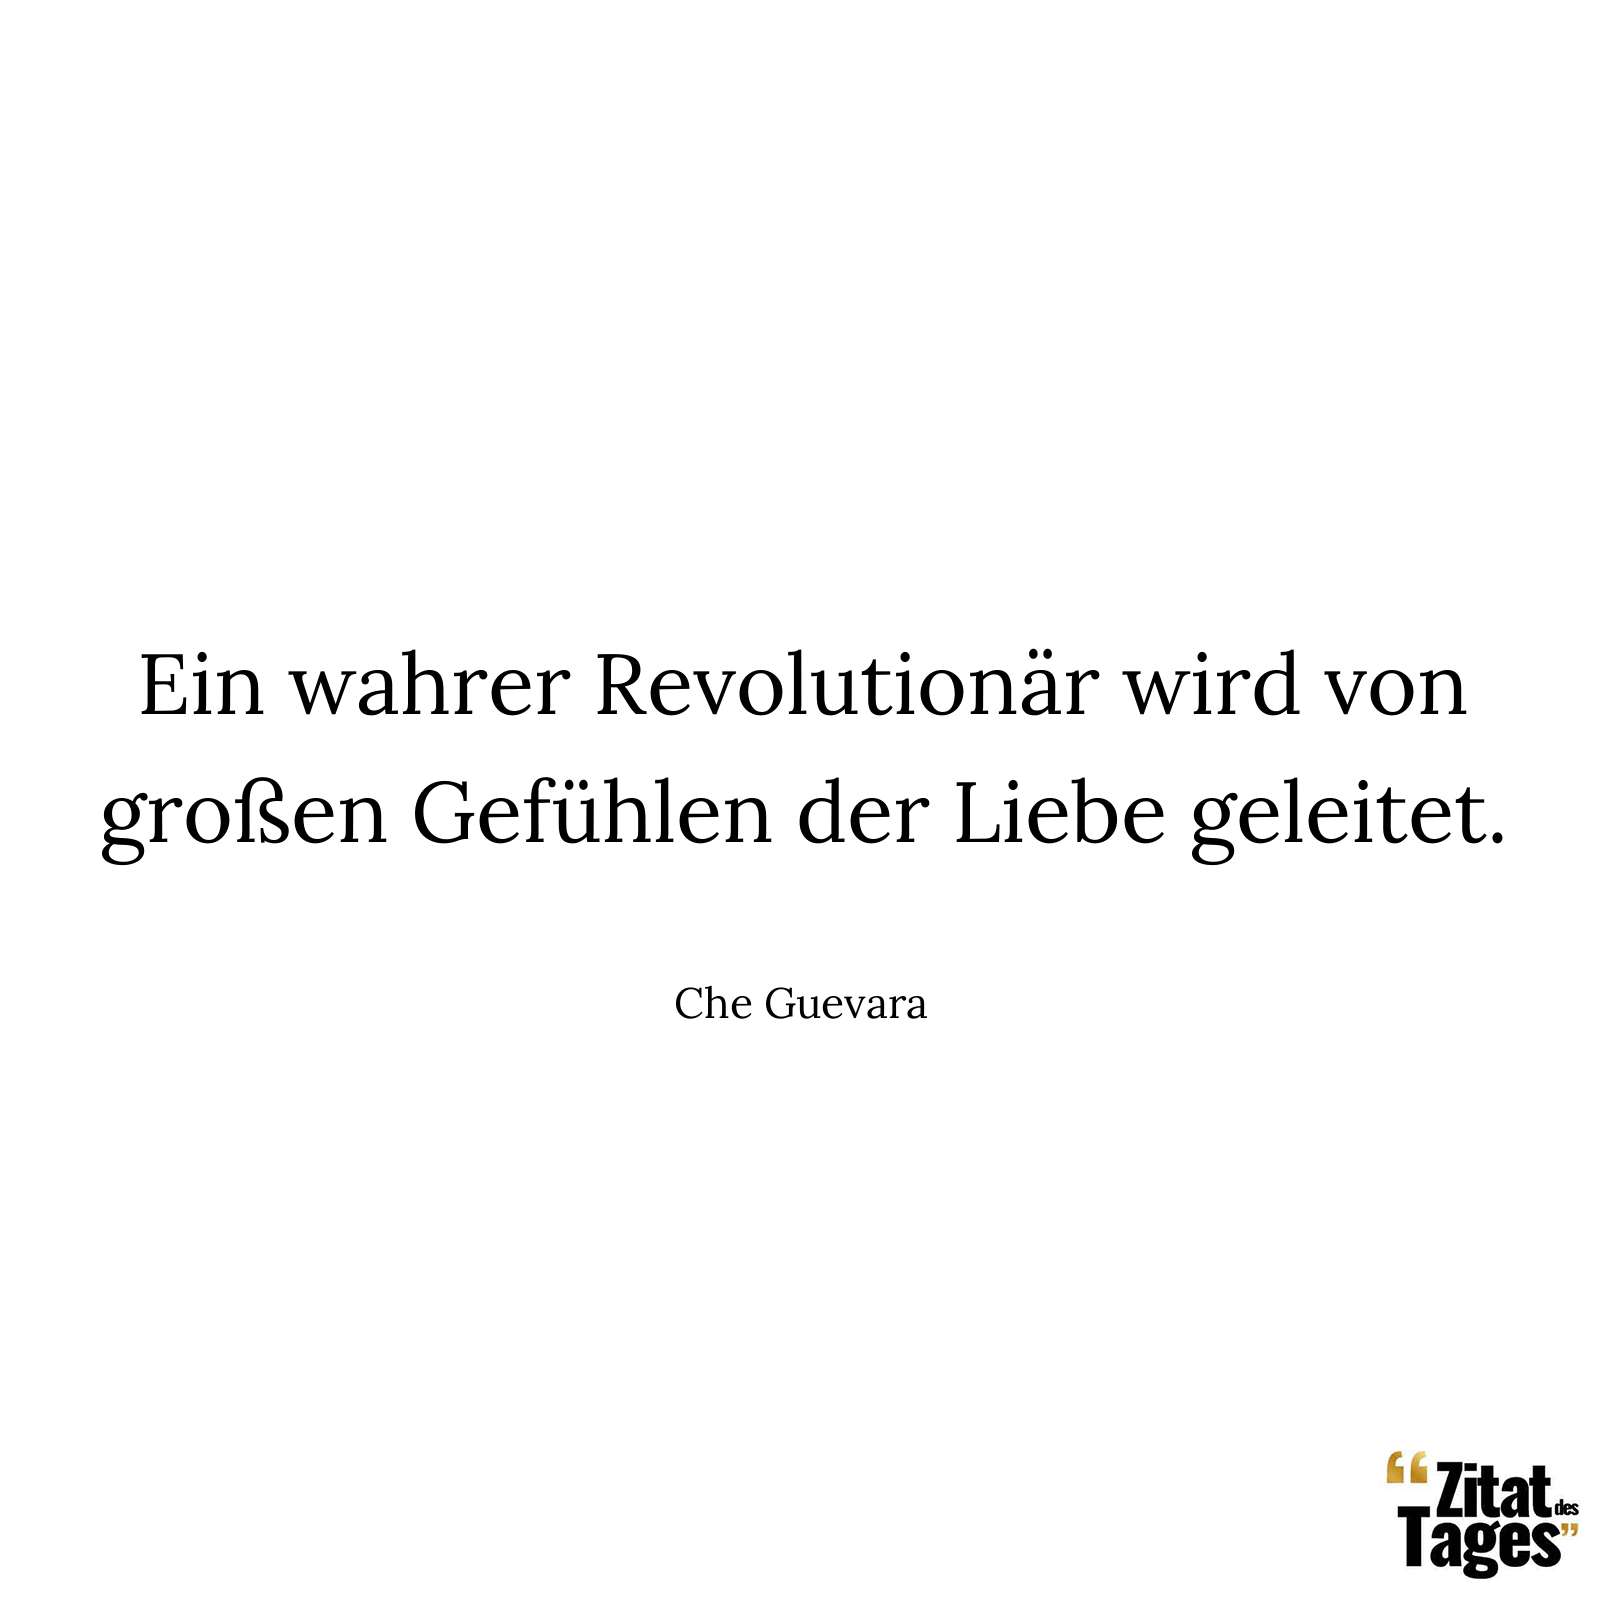 Ein wahrer Revolutionär wird von großen Gefühlen der Liebe geleitet. - Che Guevara